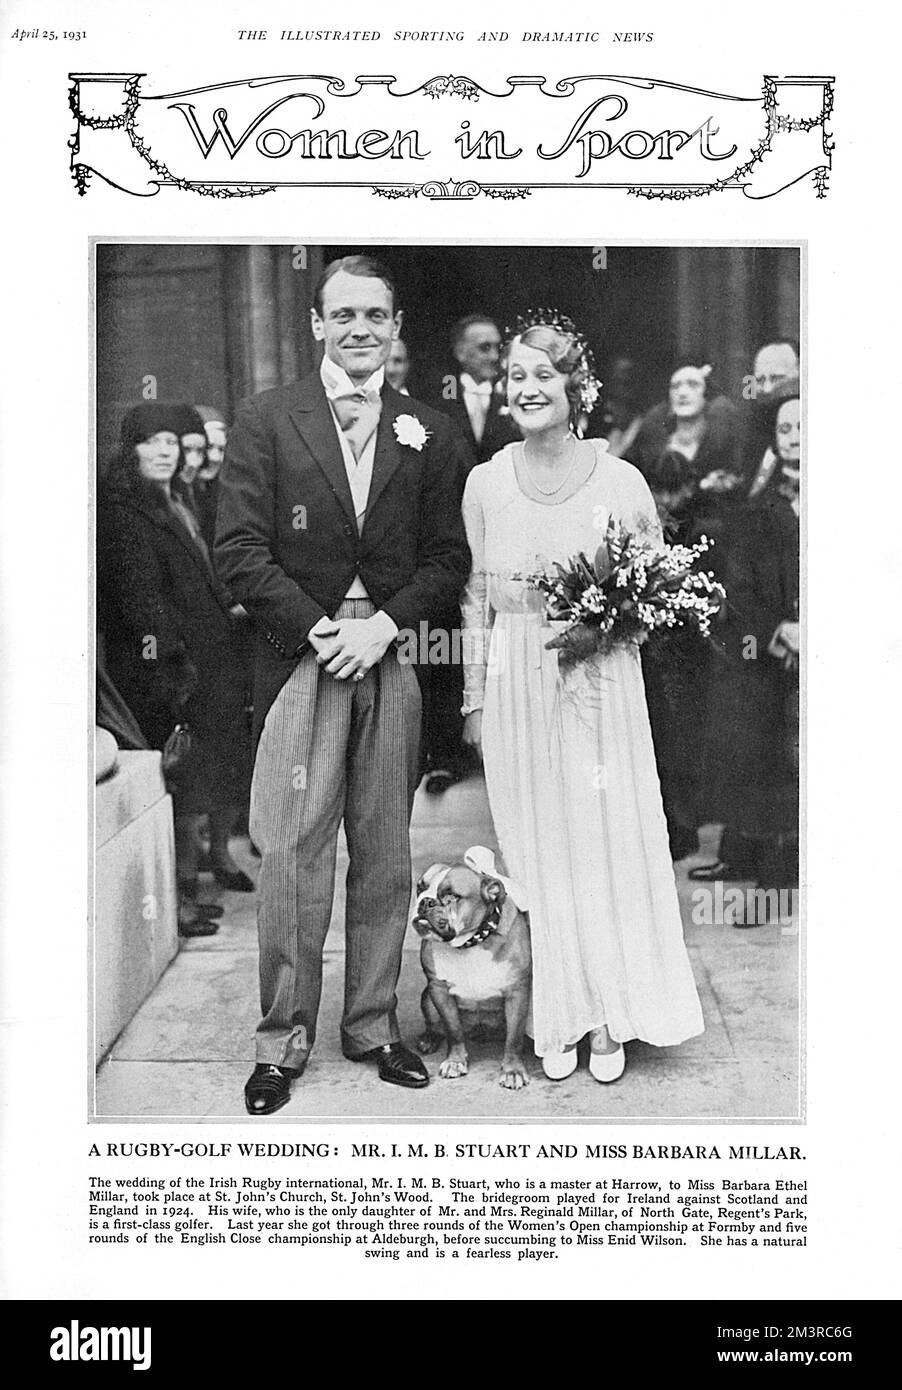 Die Hochzeit des irischen Rugby International Mr. I. M. B. Stuart (auch Master an der Harrow School) und Miss Barbara Ethel Millar, eine erstklassige Golferin, in St. John's Church in St. John's Wood im April 1931. Sie werden von einer Bulldogge besucht, die ein Band um seinen Hals trägt. Datum: 1931 Stockfoto